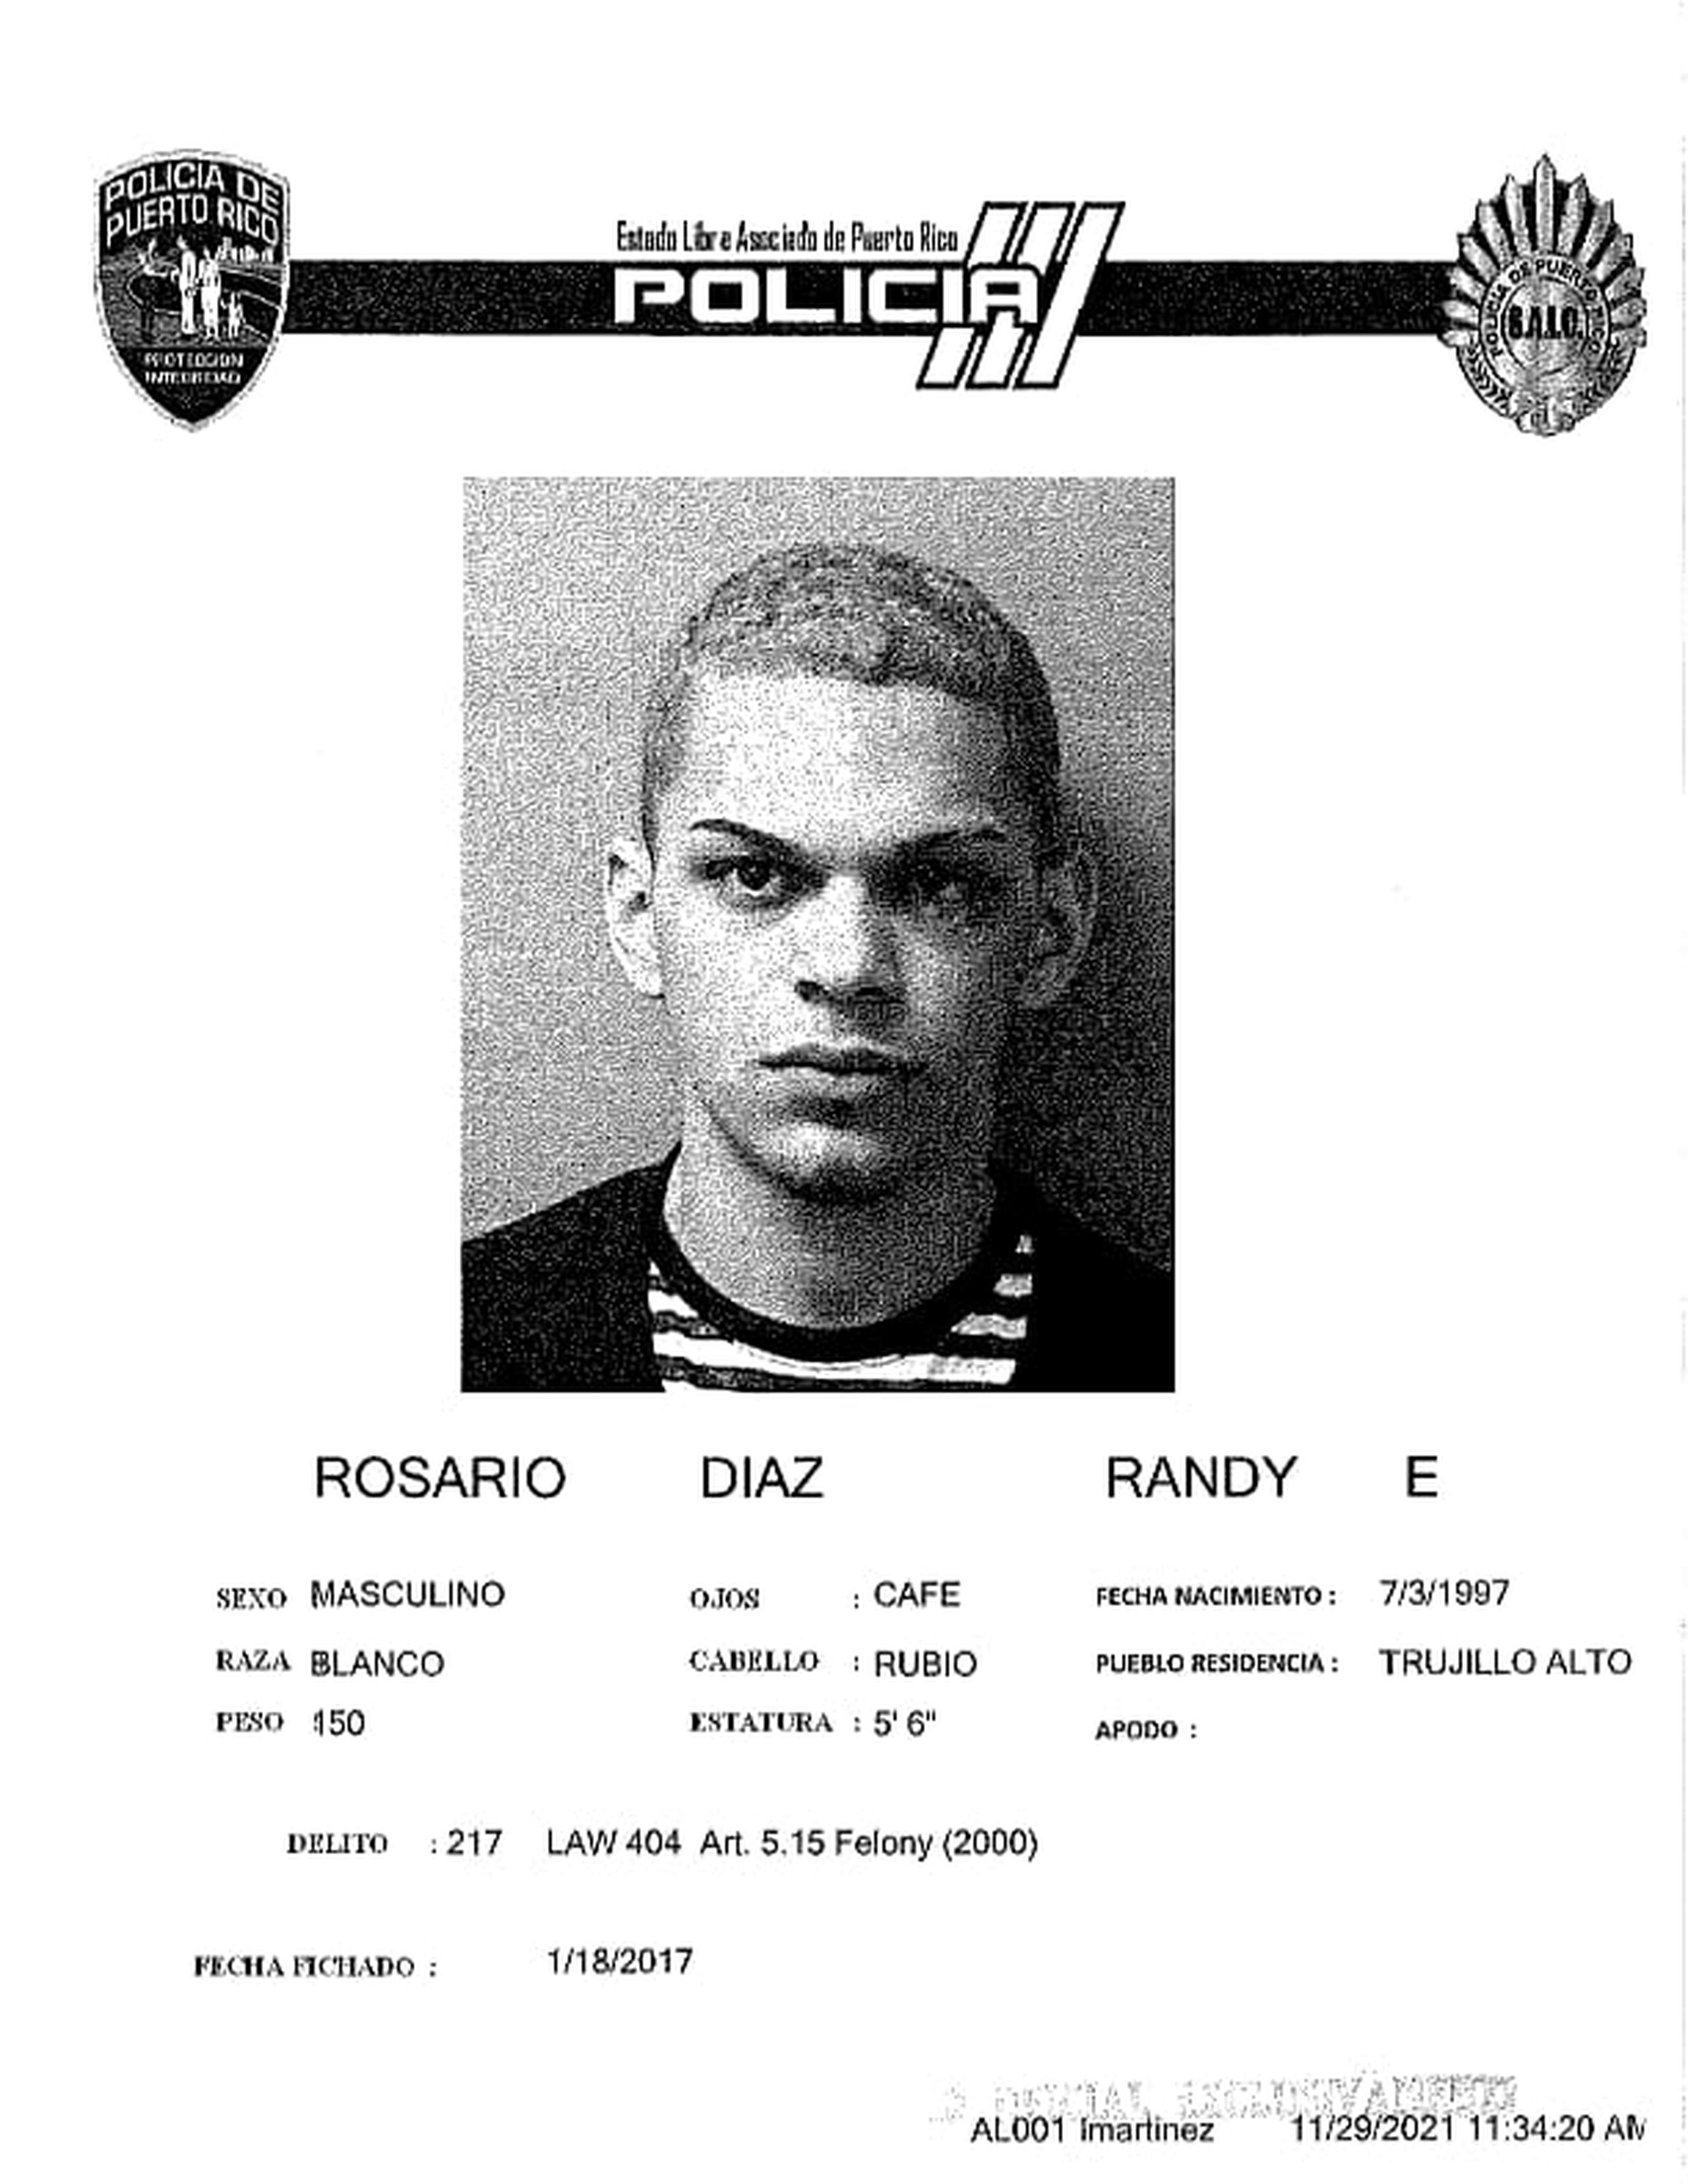 El cadáver de Randy E. Rosario Díaz de 24 años y residente en Cupey, fue localizado junto al de otro hombre, en la calle Los Ángeles, en Santurce